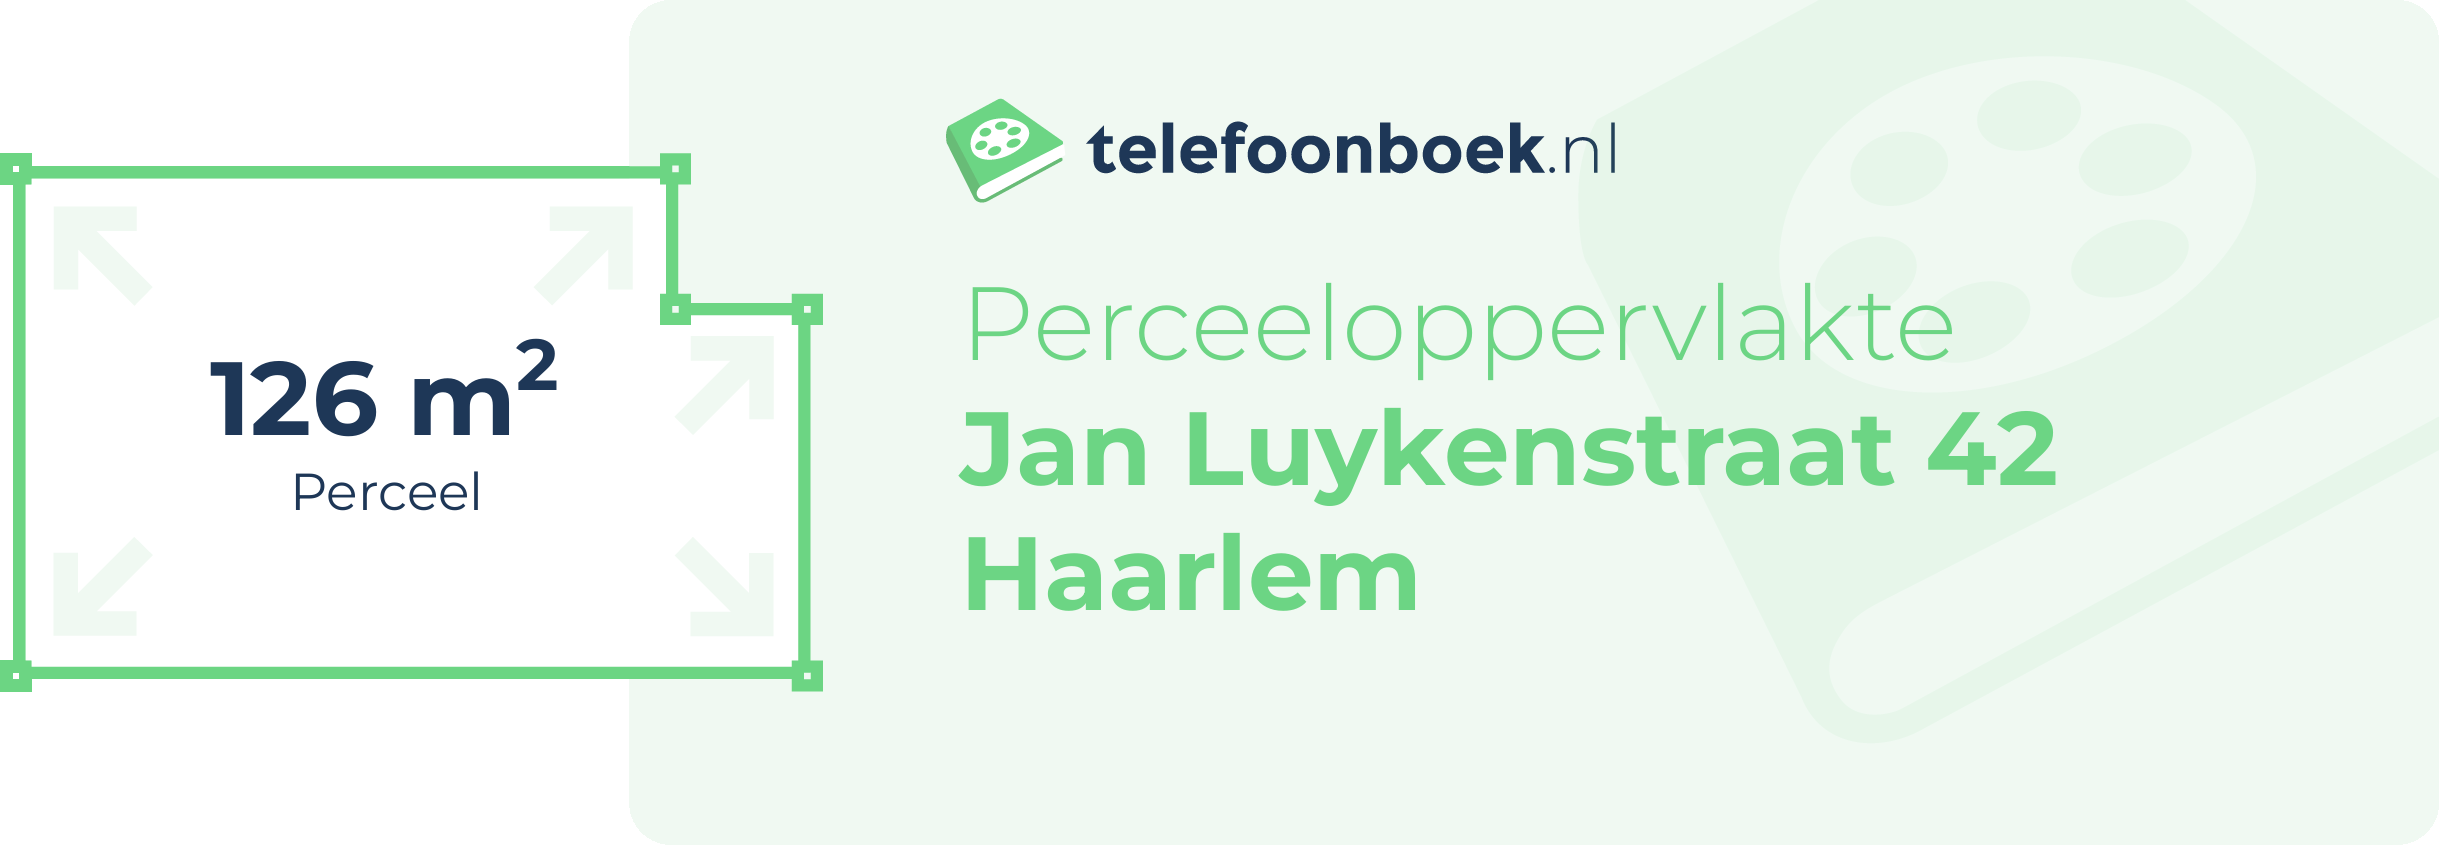 Perceeloppervlakte Jan Luykenstraat 42 Haarlem